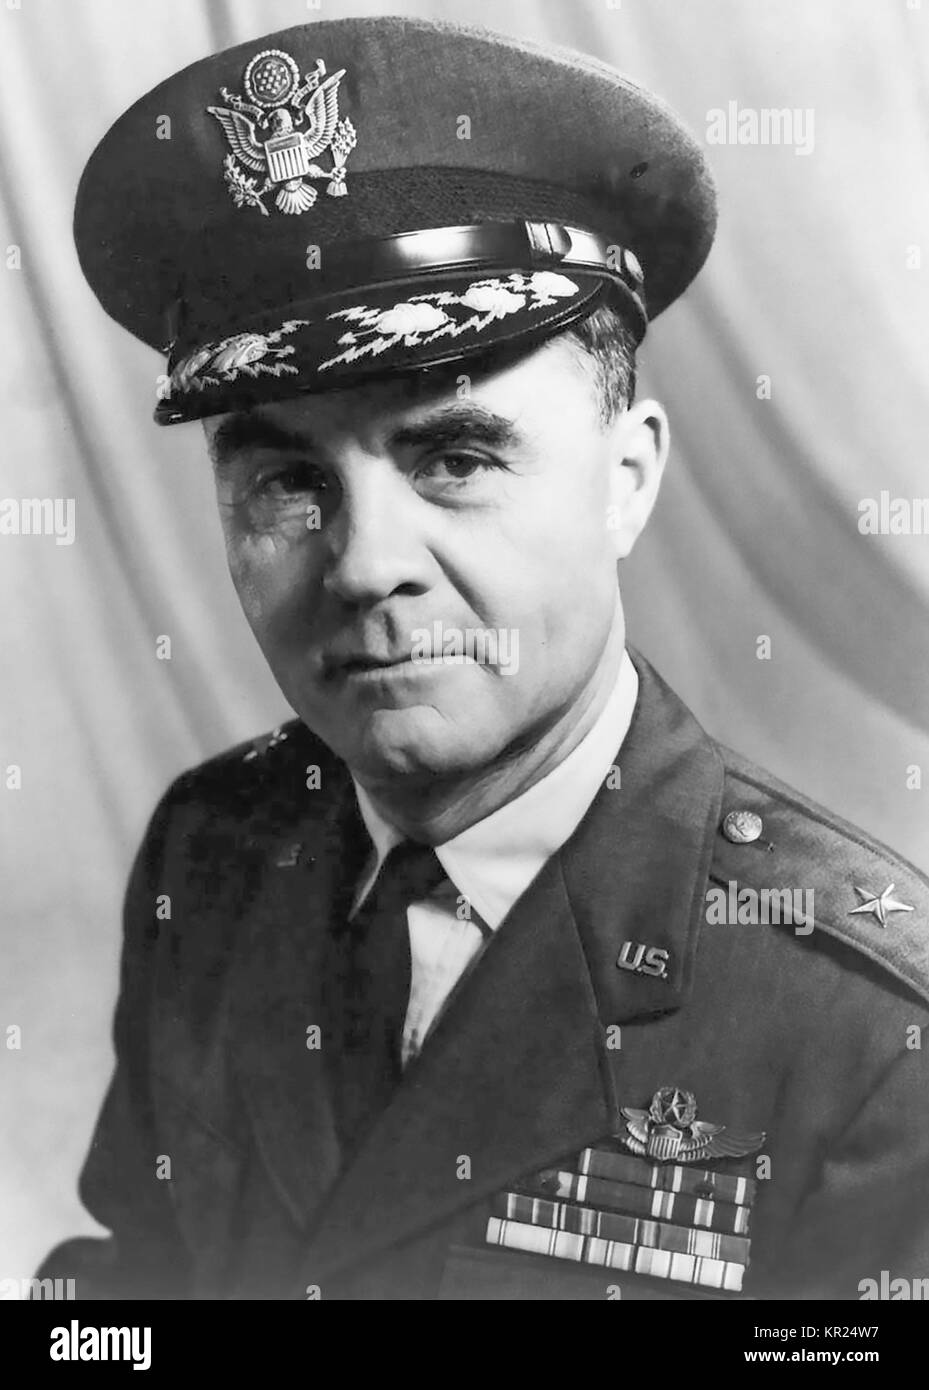 PAUL TIBBETS (1915-2007) comme un brigadier-général de l'USAF. Il pilote l'Enola Gay qui a diminué de Little Boy, la première bombe atomique sur Hiroshima, pn 6 Août 1945 Banque D'Images